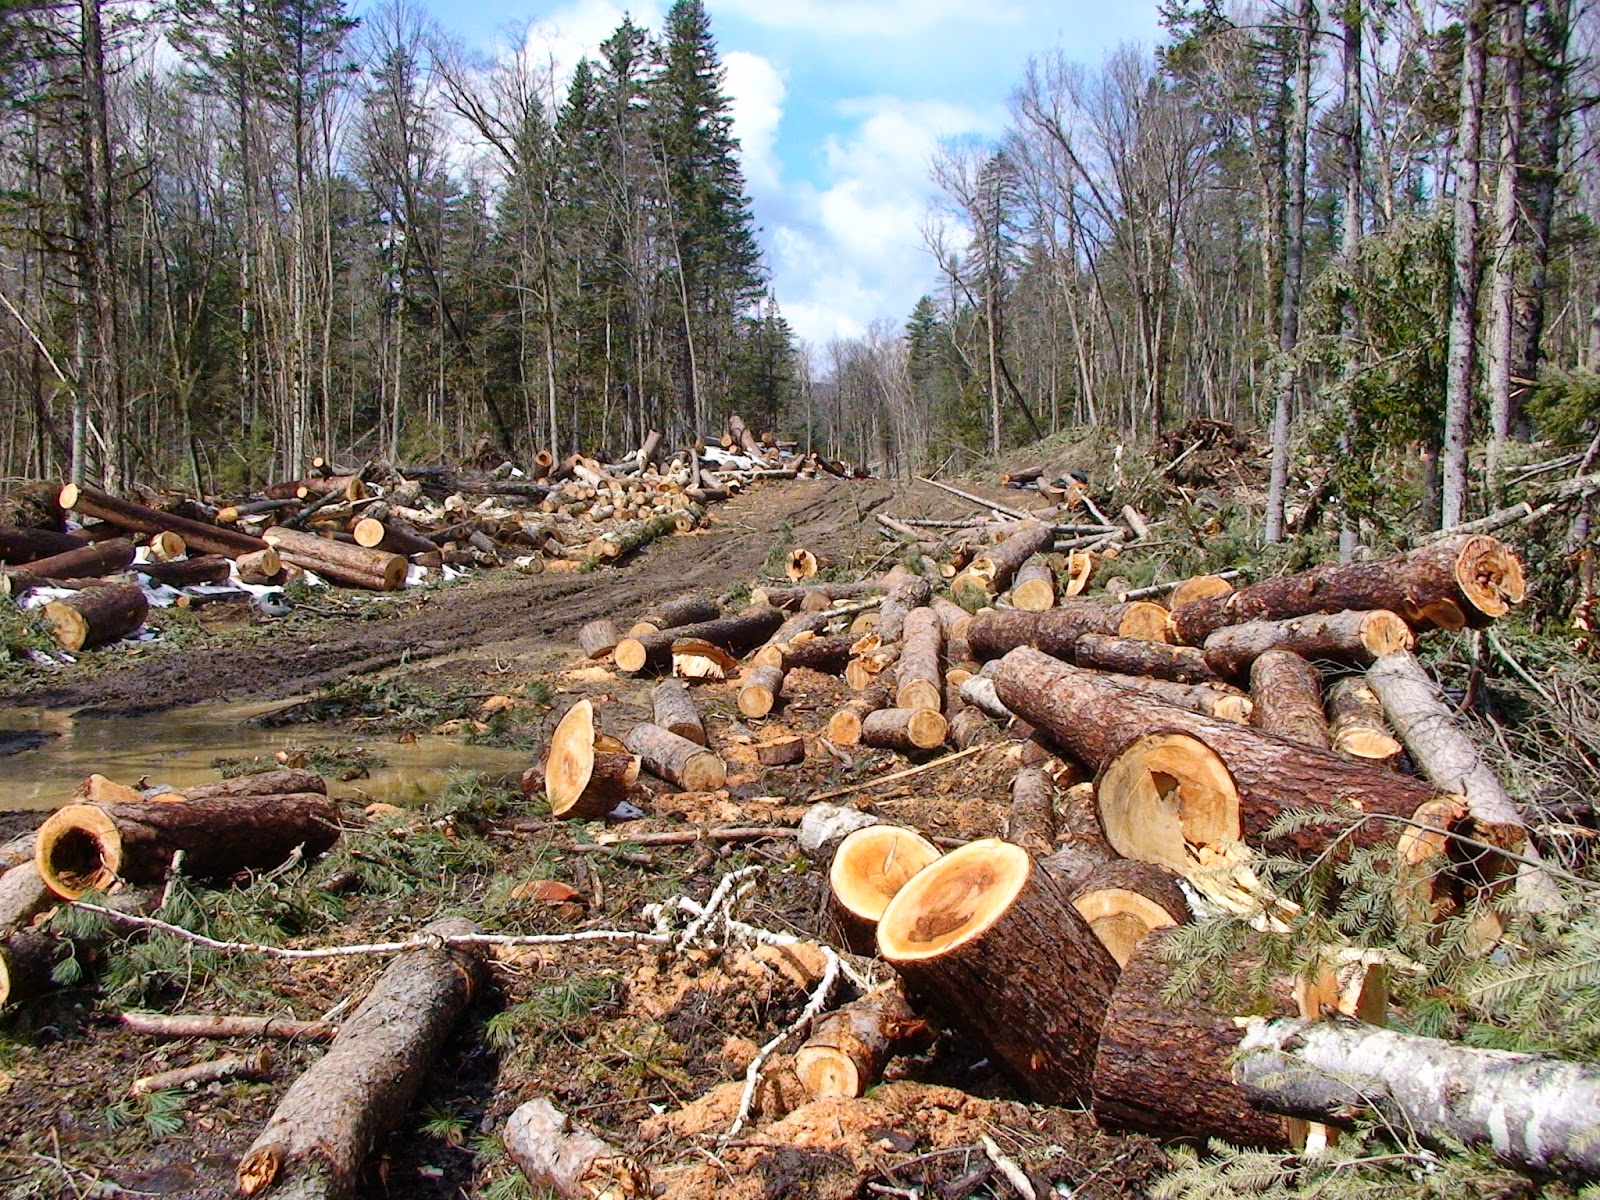 Agar hutan tidak gundul maka jika menebang hutan dengan sistem